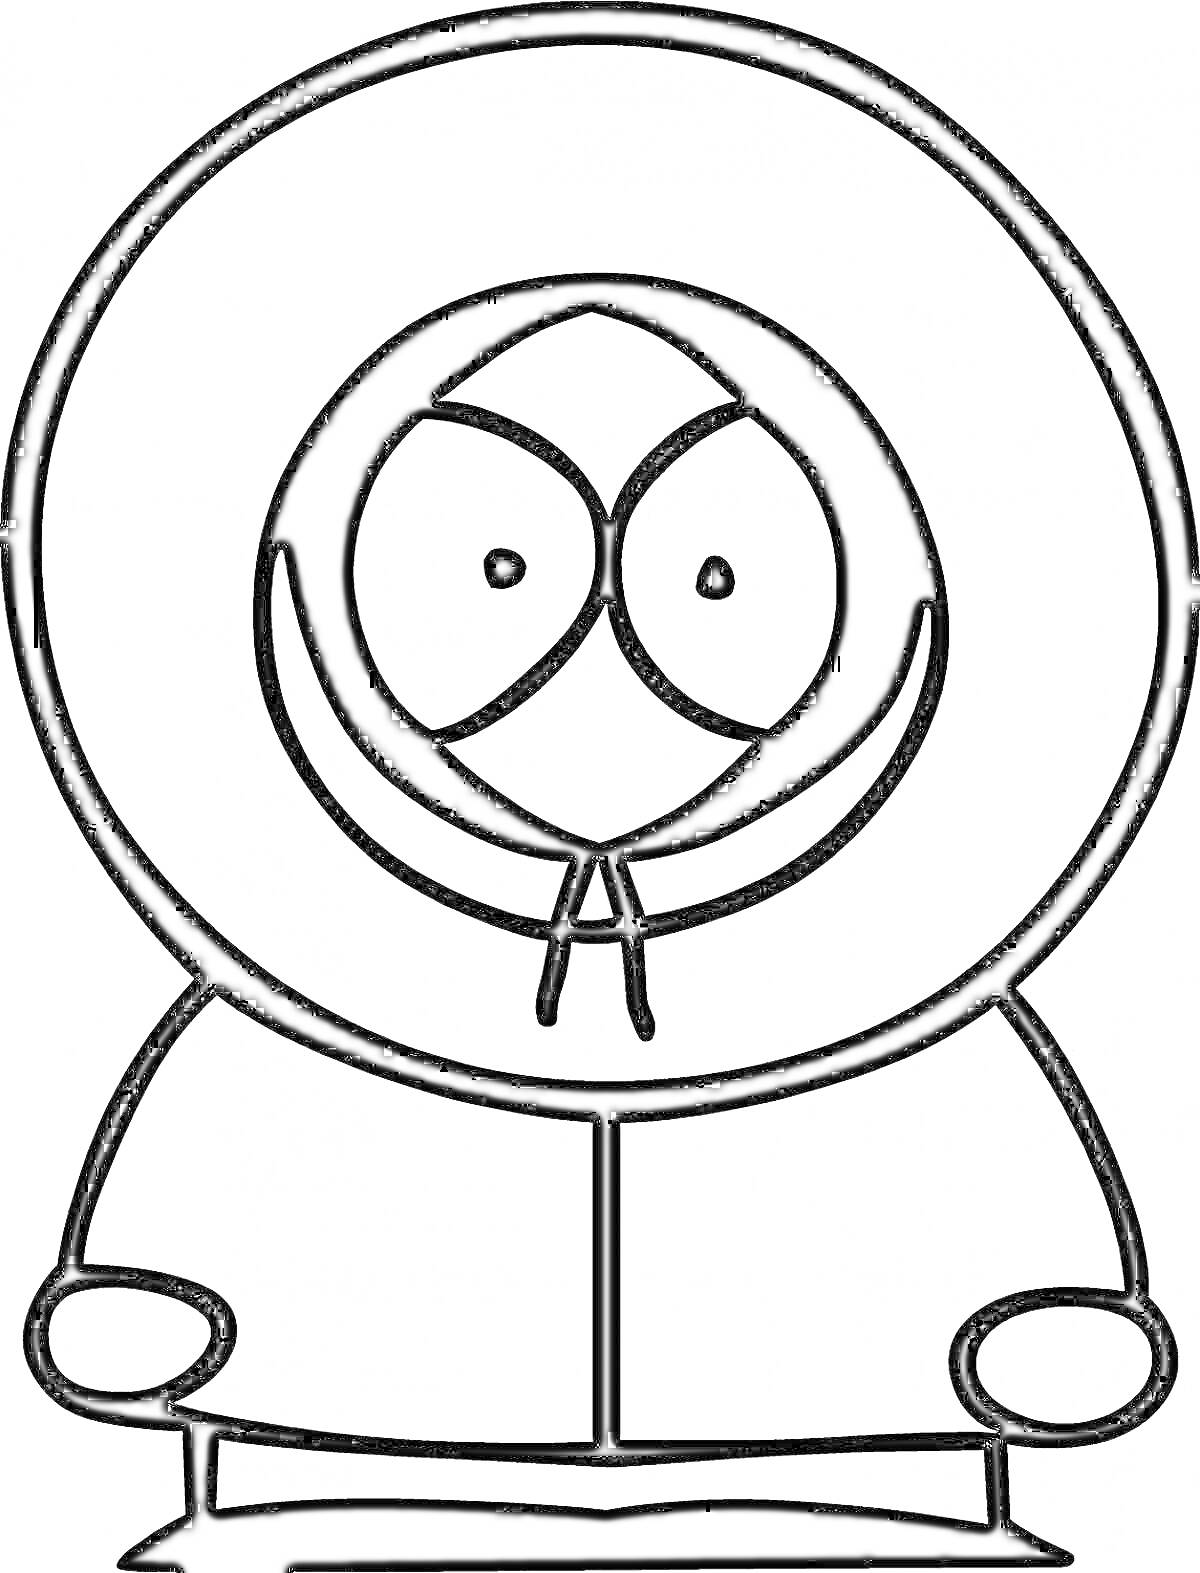 Раскраска персонаж в капюшоне с большими глазами и руками по бокам